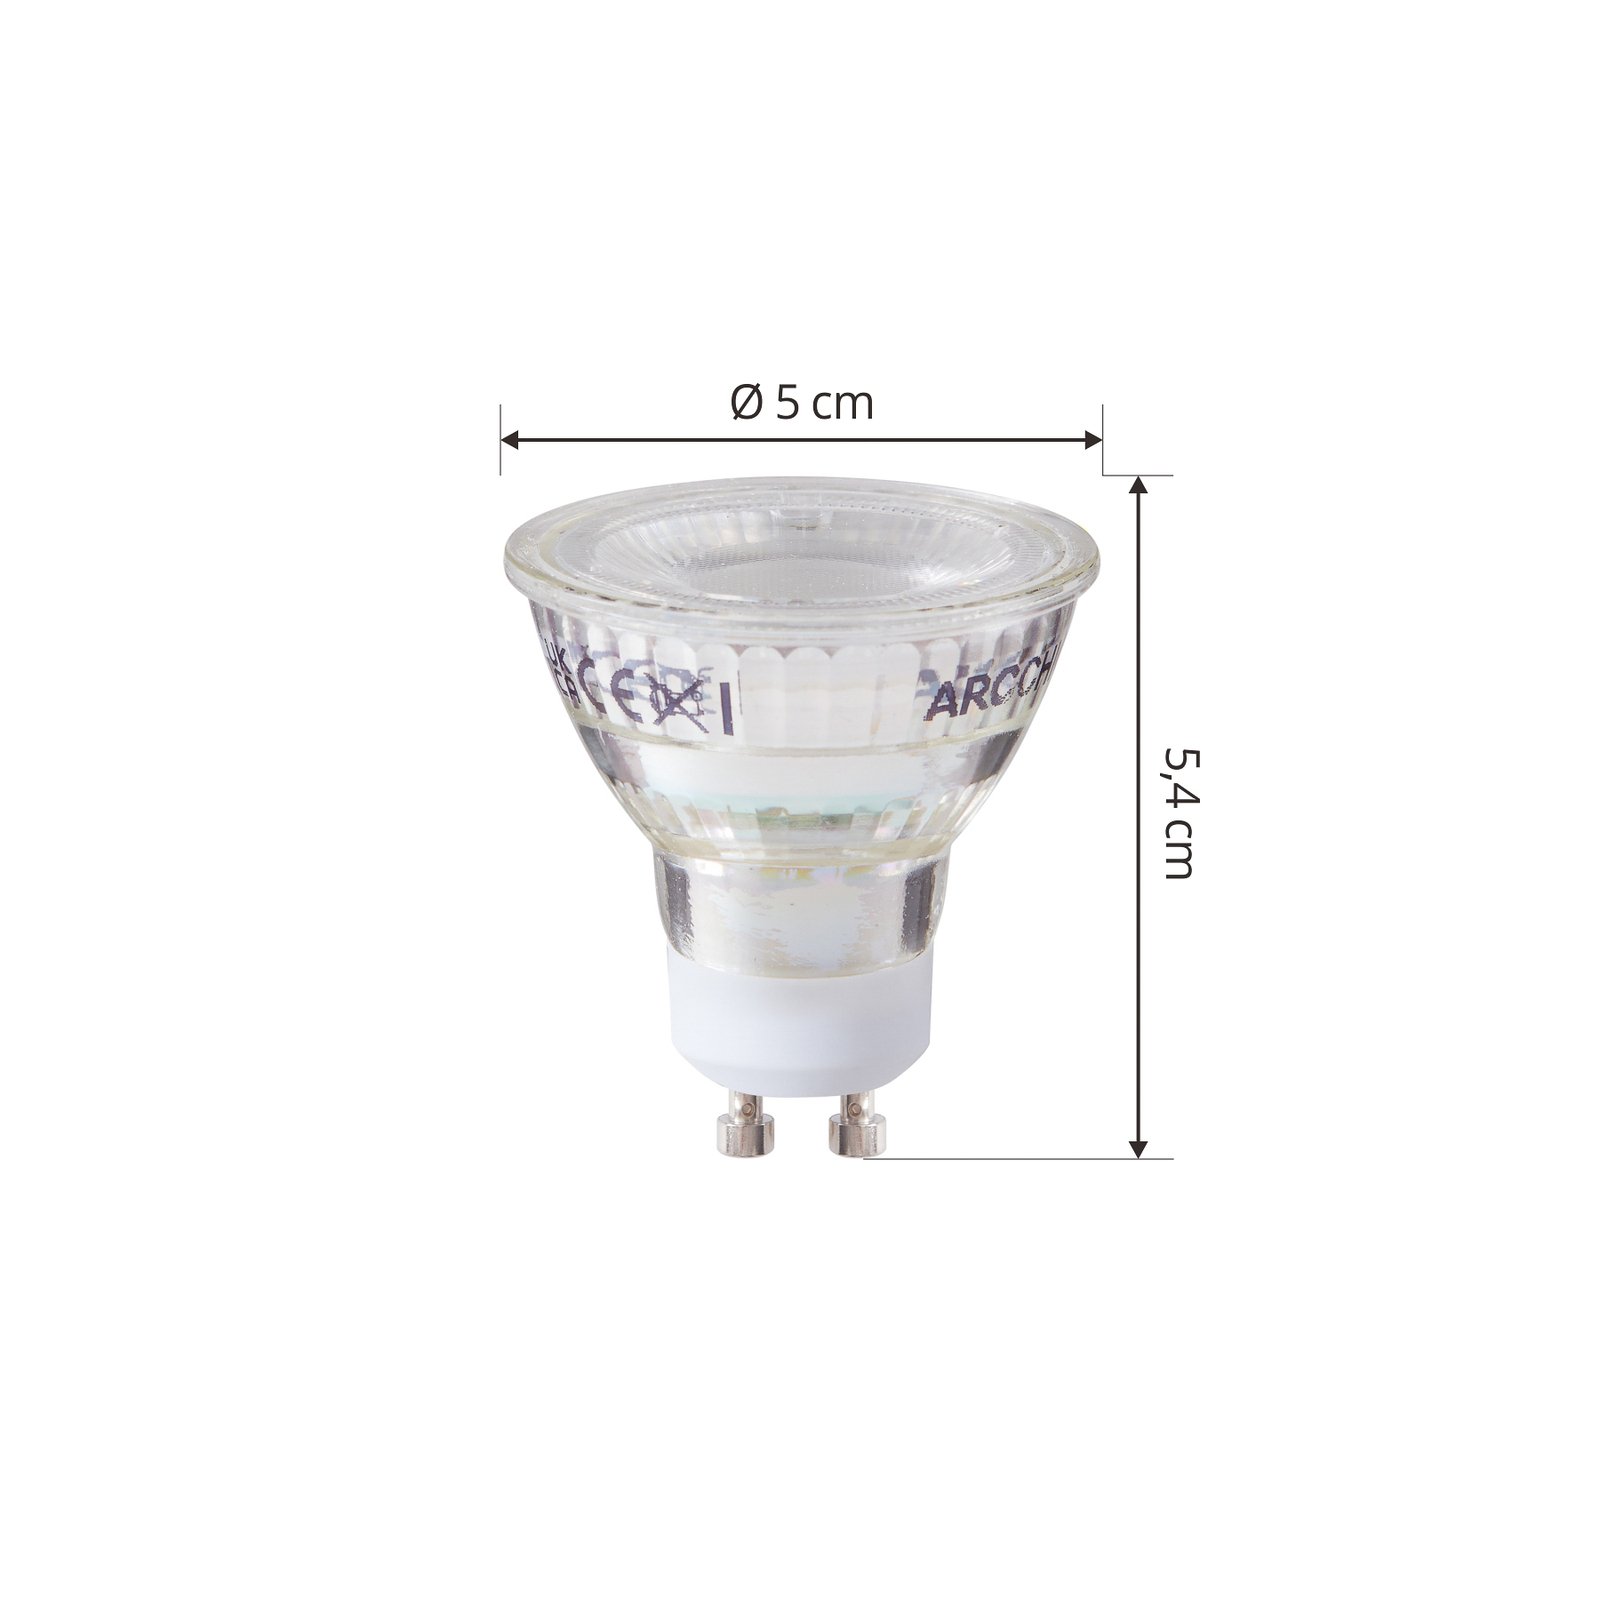 Arcchio LED-lampa GU10 2,5W 6500K 450lm glas set om 10